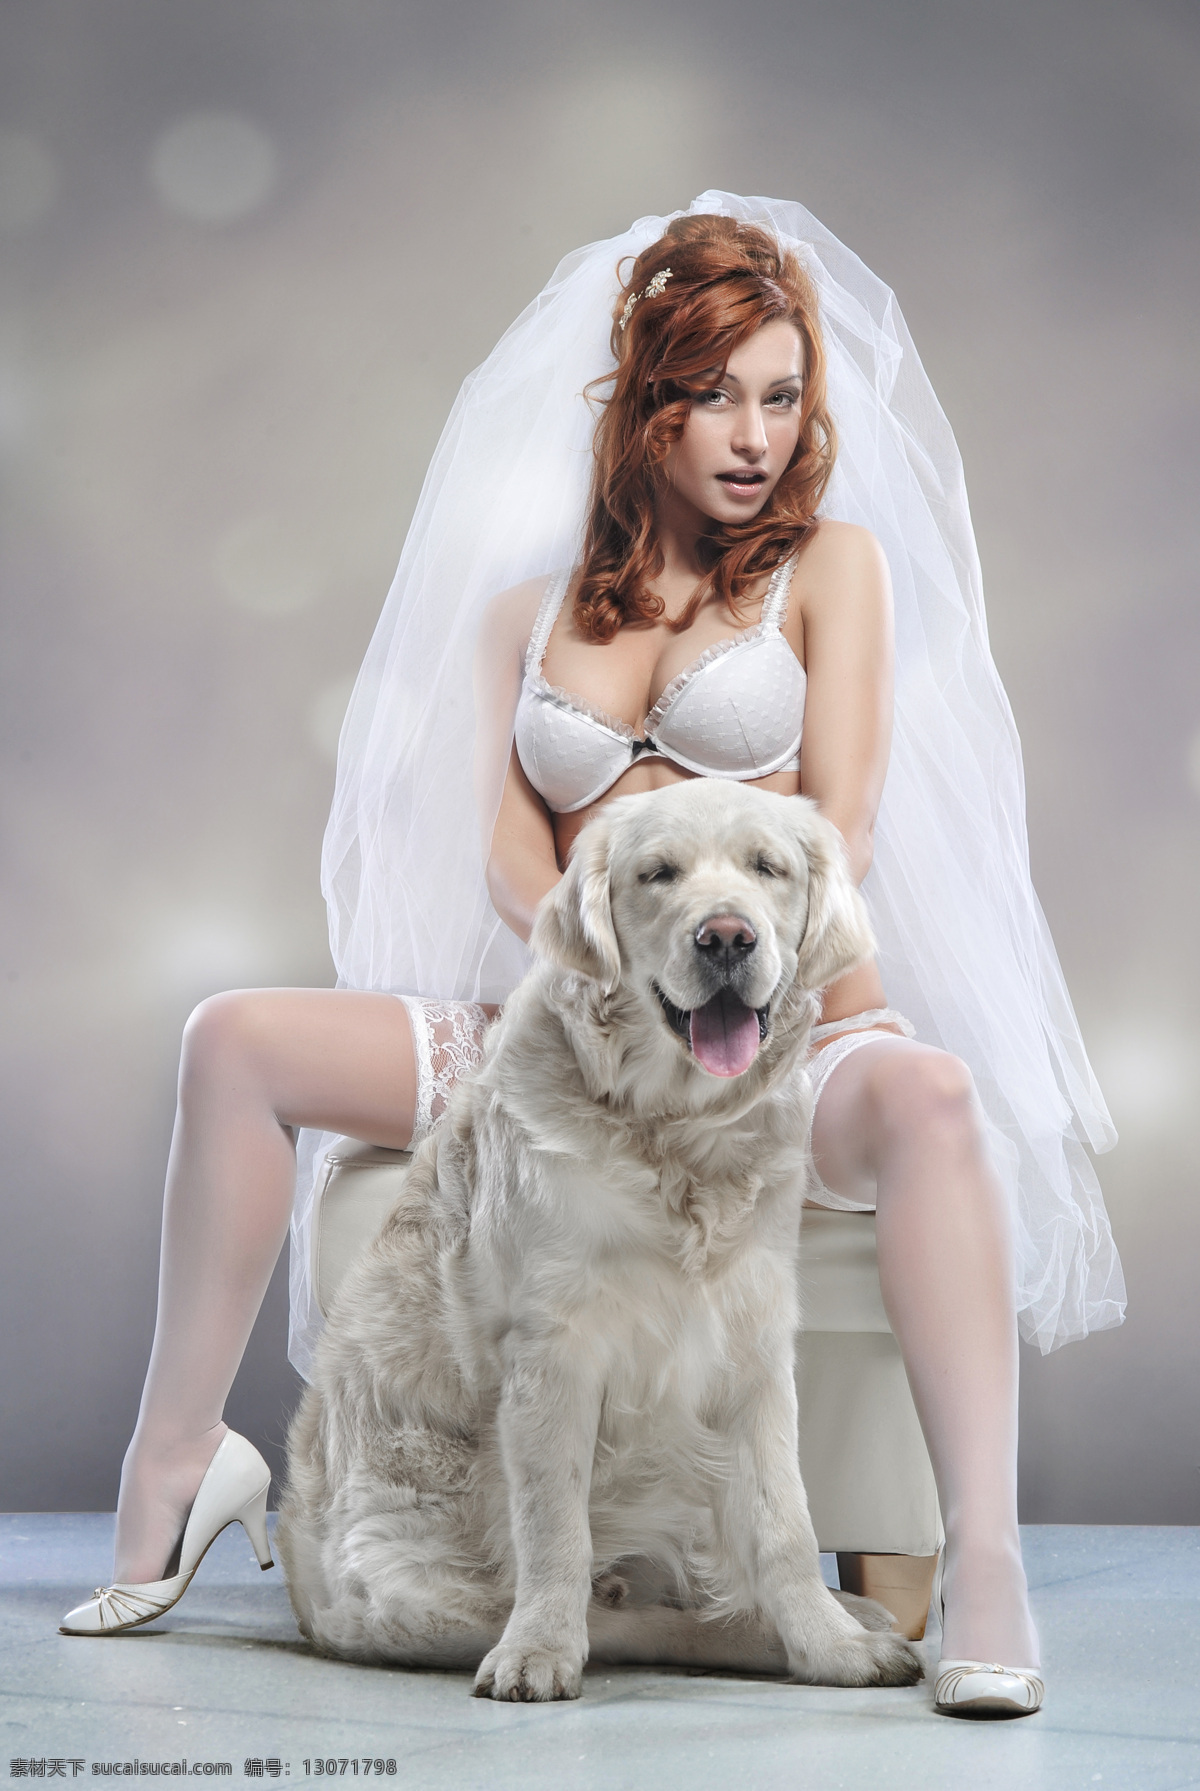 性感 新娘 狗 性感新娘和狗 美女 婚纱照 人物摄影 情侣图片 人物图片